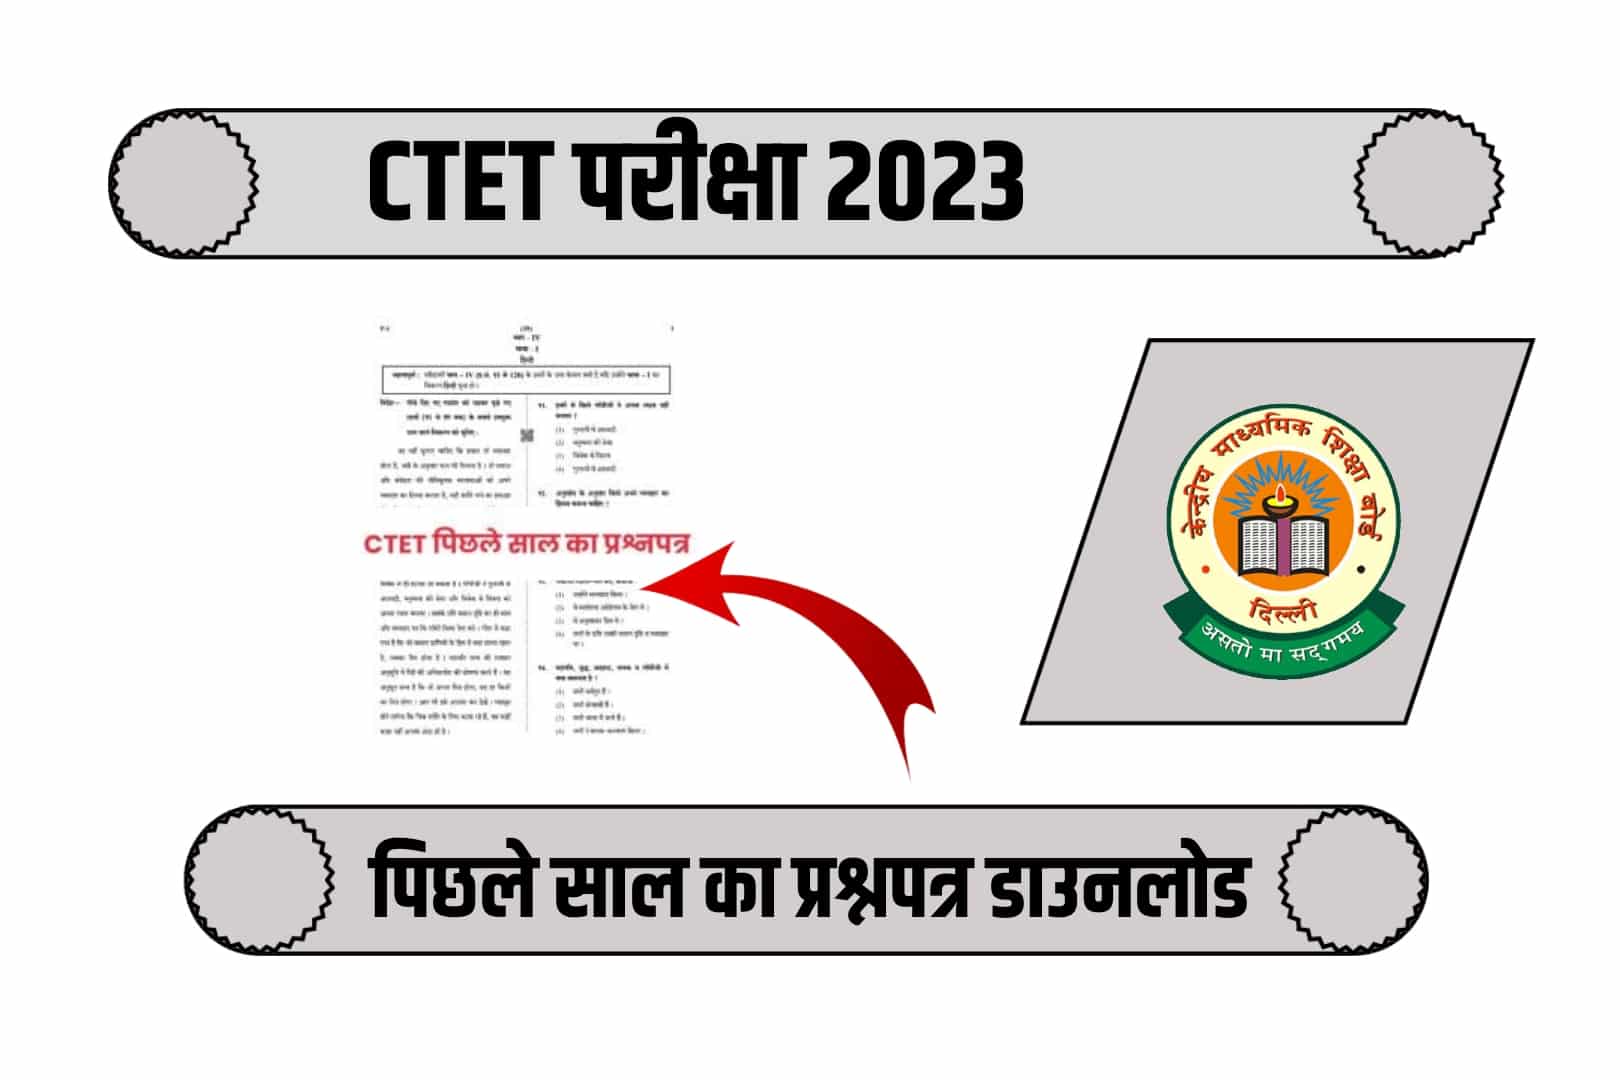 CTET Previous Year Paper: CTET पिछले साल का प्रश्नपत्र डाउनलोड करें